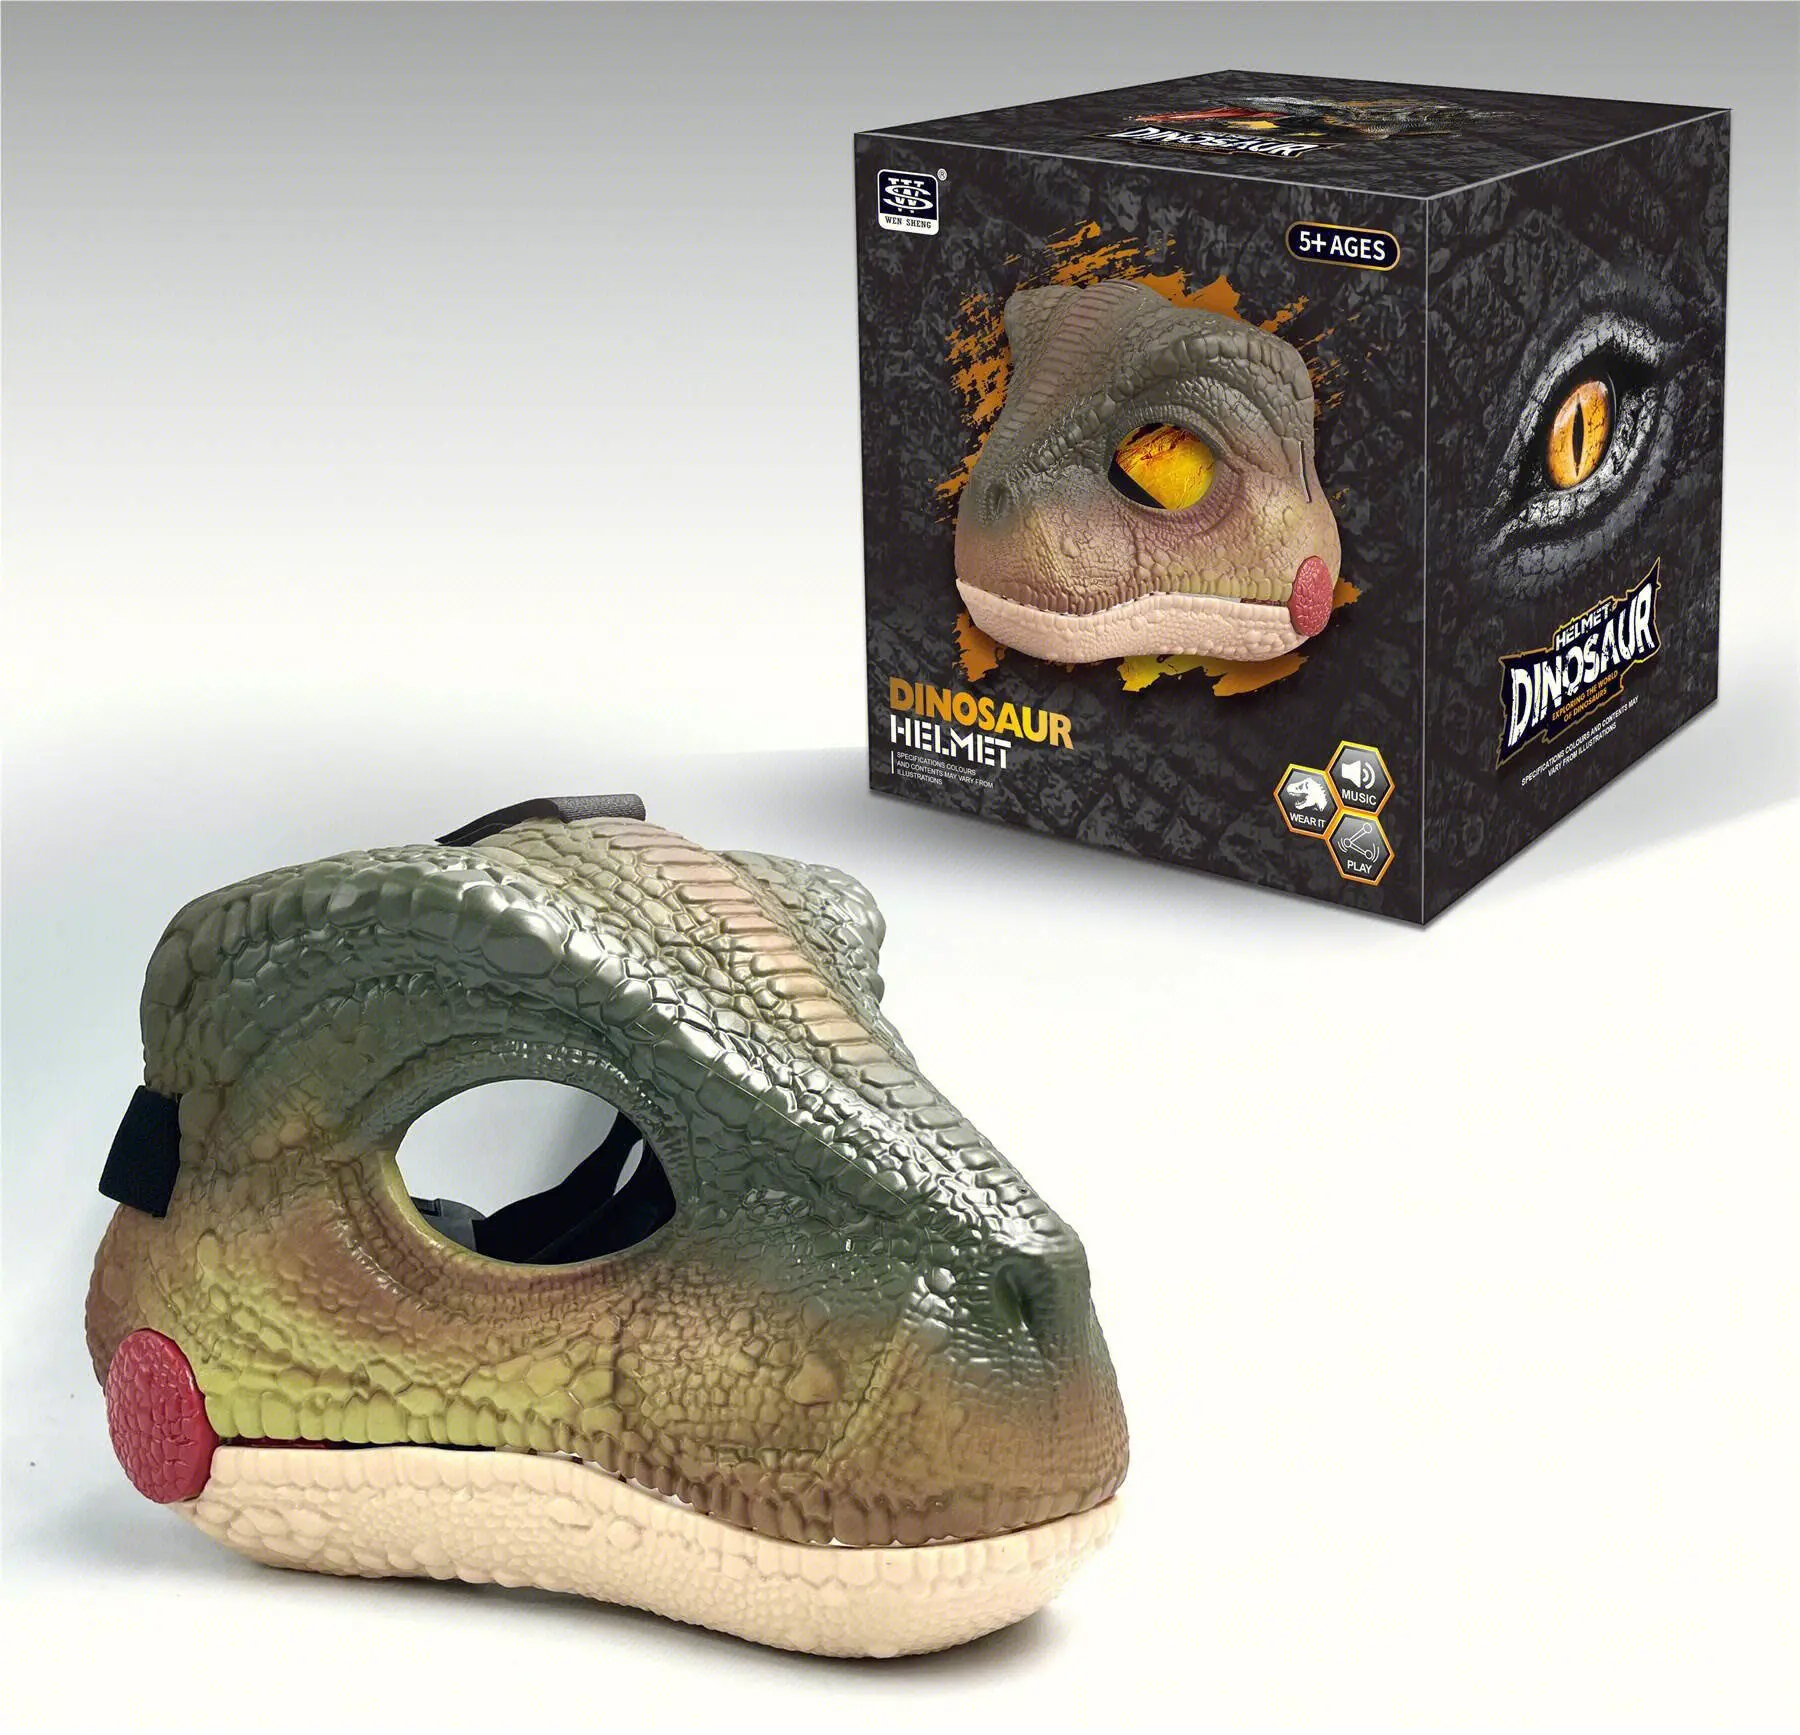 Khủng Long mặt nạ di chuyển hàm di chuyển Halloween Trang trí nội thất Velociraptor Rex mặt nạ động vật, quà tặng giáng sinh cho trẻ em